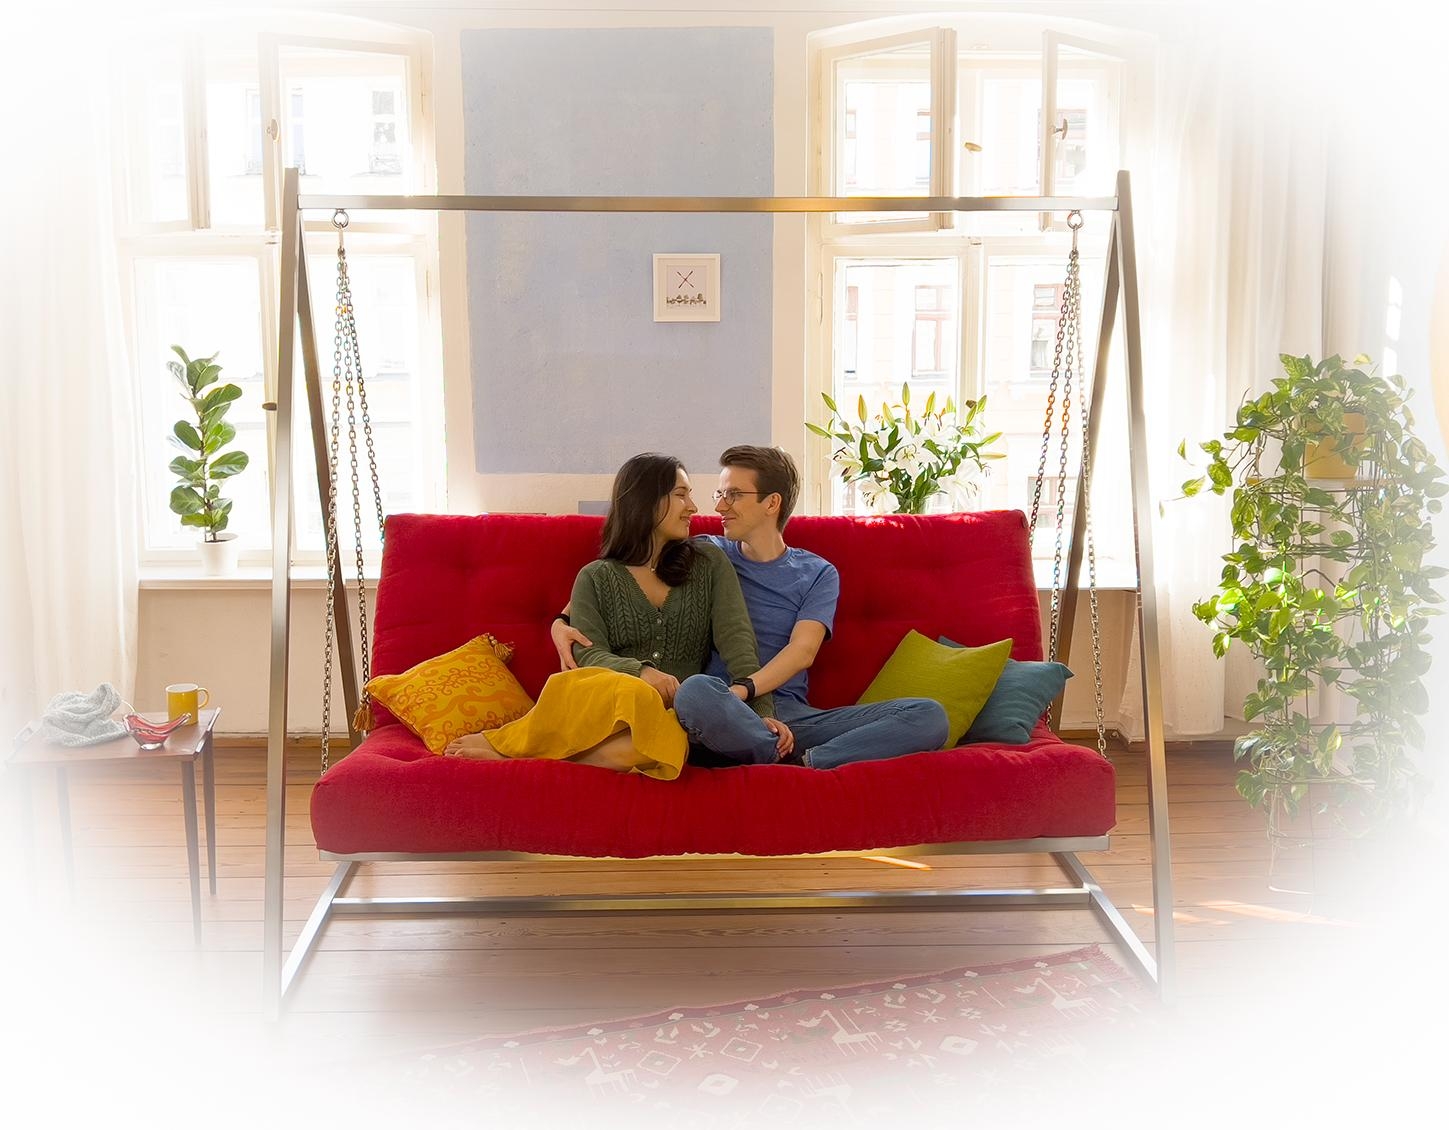 Das ideale #Hochzeitsgeschenk: Unser #Schaukelsofa für das #Wohnzimmer. Einfach perfekt für traumhafte Momente der #Entspannung und #Zweisamkeit.   #couch #couchstyle